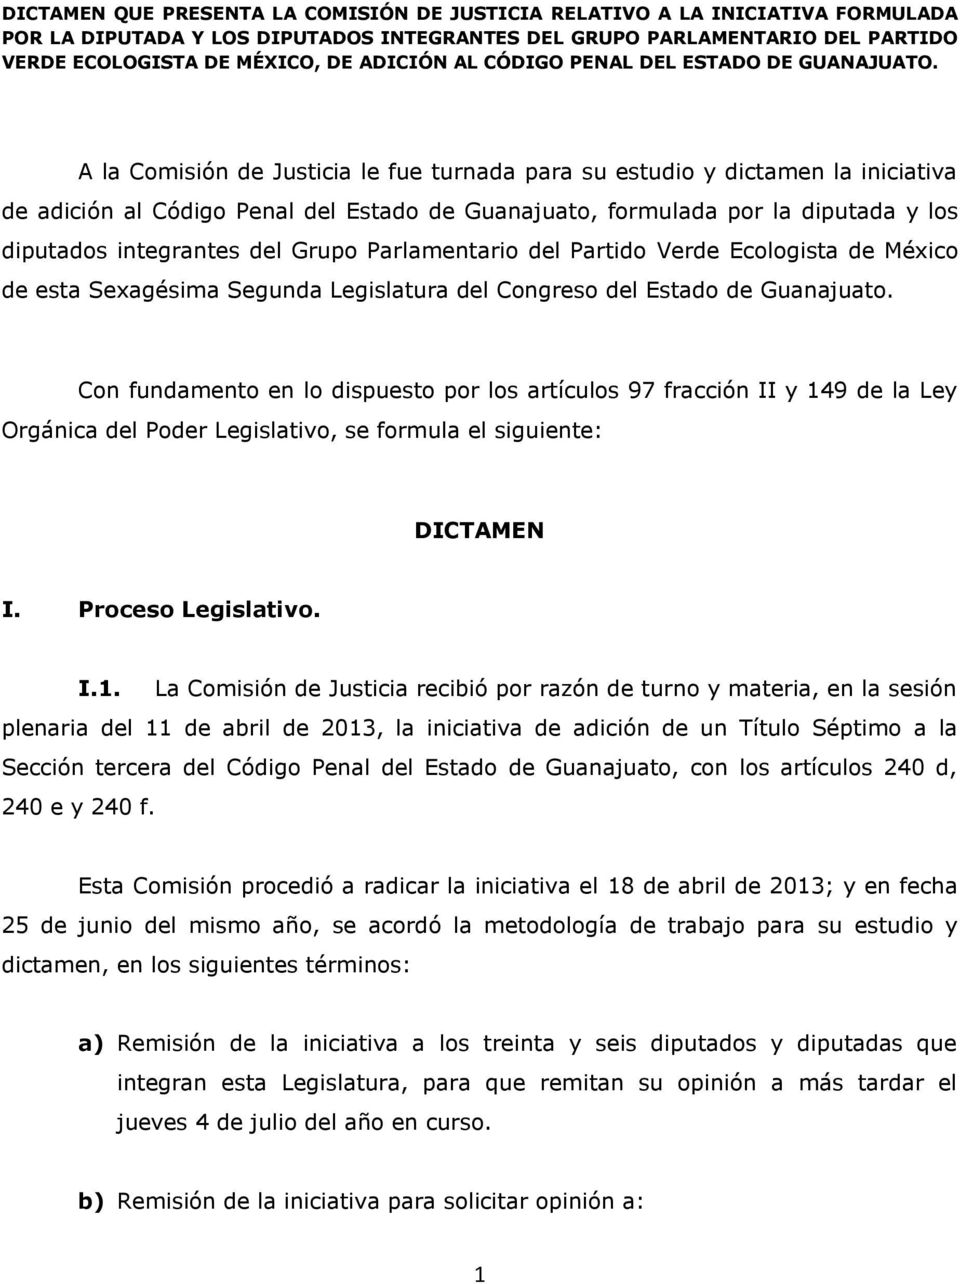 A la Comisión de Justicia le fue turnada para su estudio y dictamen la iniciativa de adición al Código Penal del Estado de Guanajuato, formulada por la diputada y los diputados integrantes del Grupo